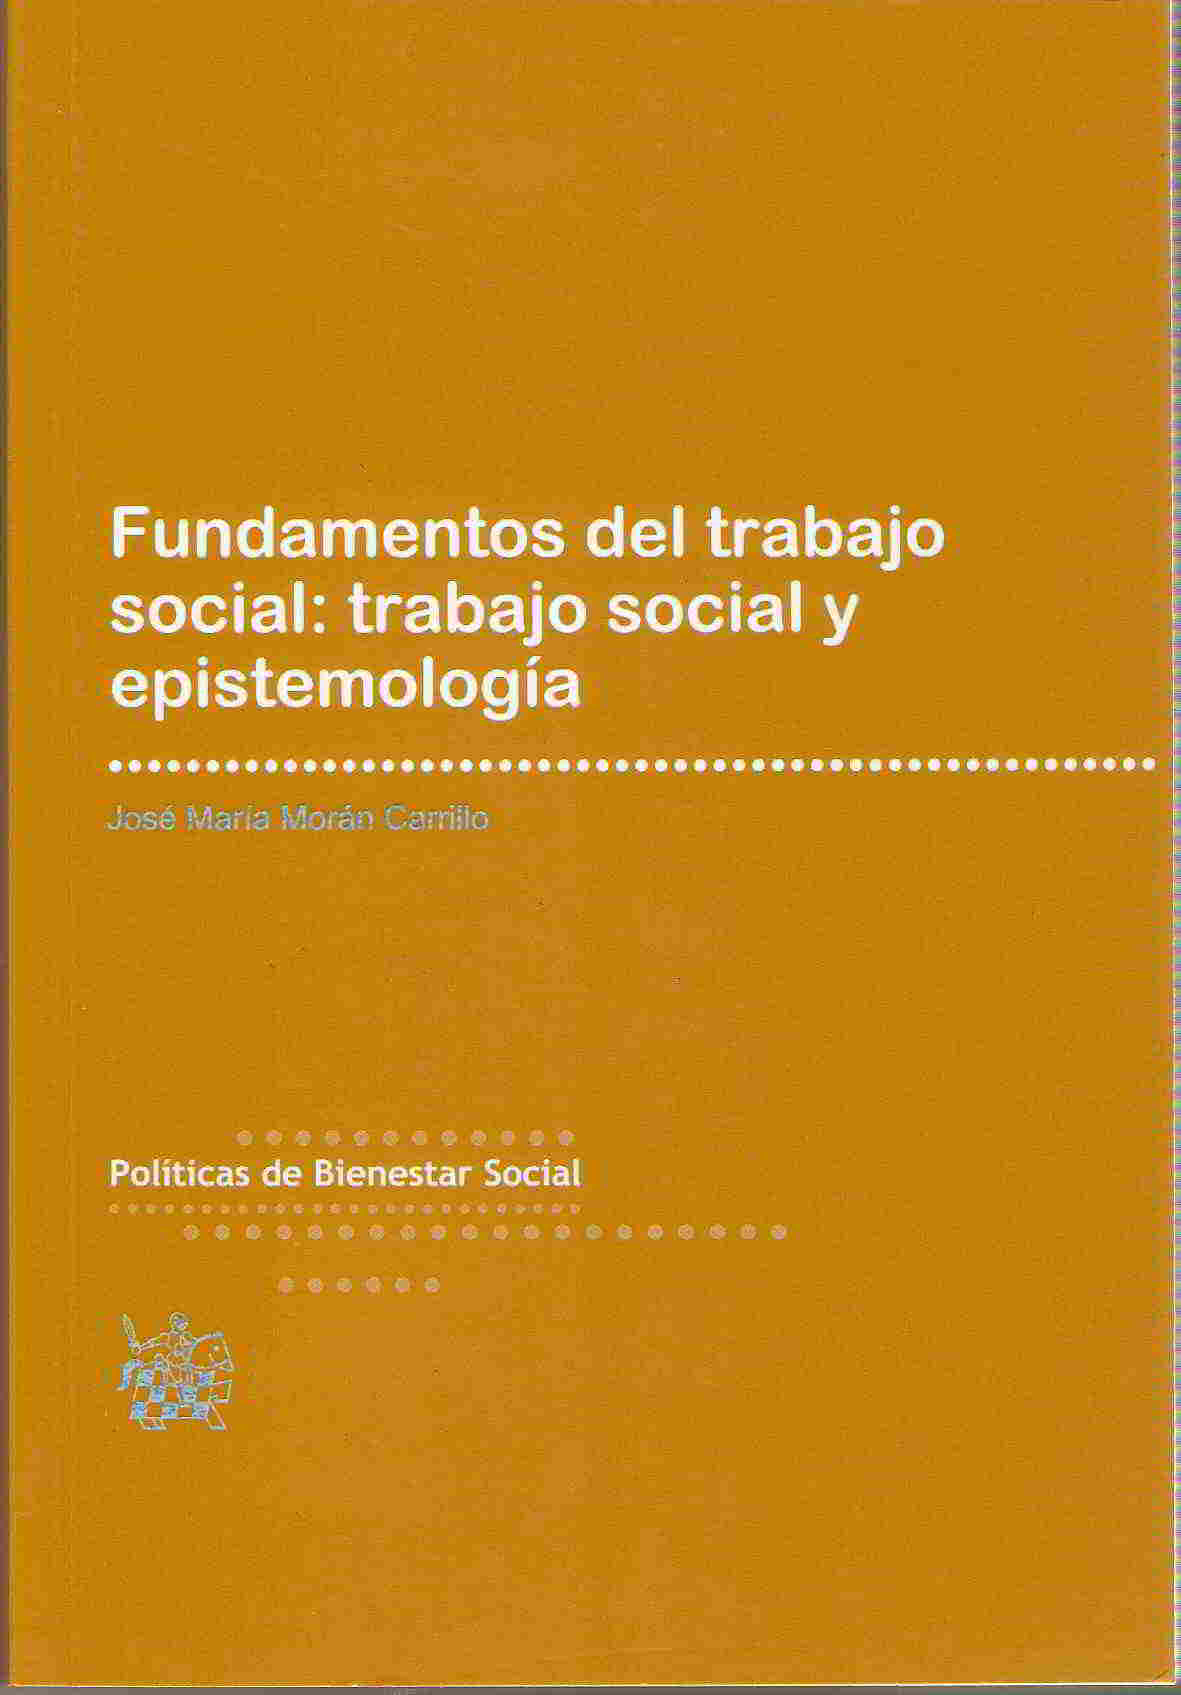 Fundamentos del trabajo social: trabajo social y epistemologia